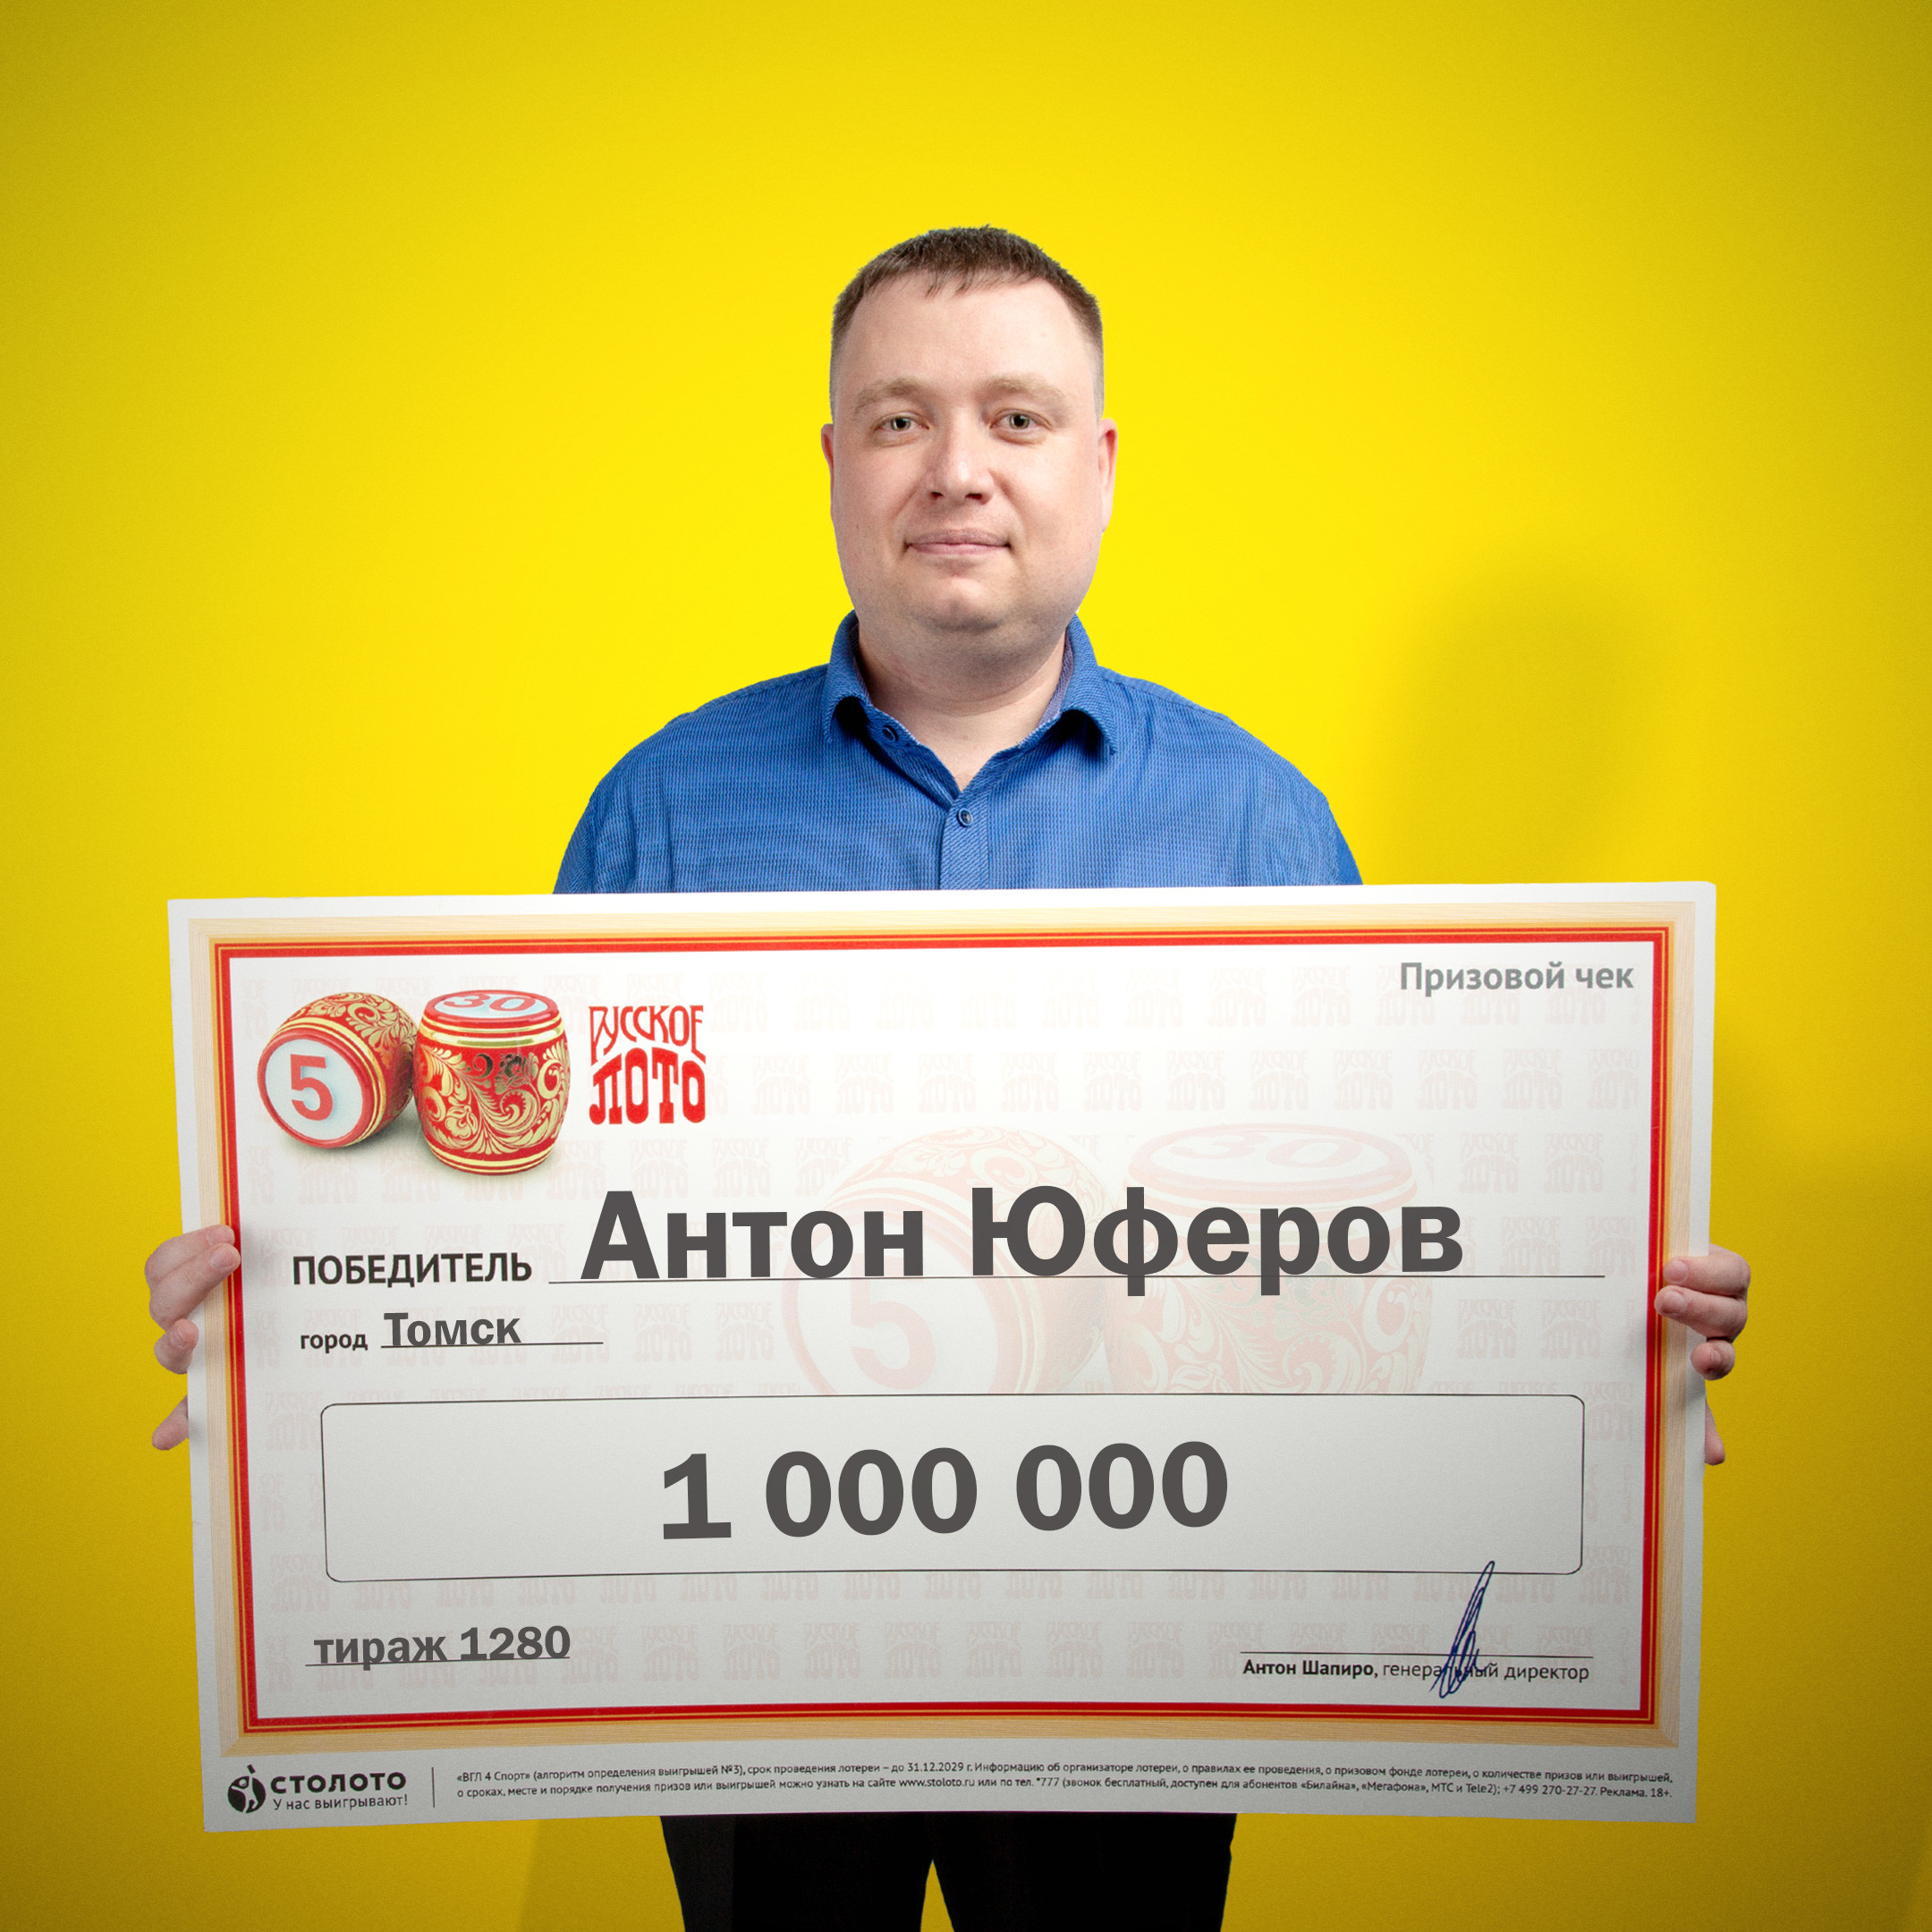 Последняя лотерея столото кто выиграл эльдорадо 24 казино россия forum